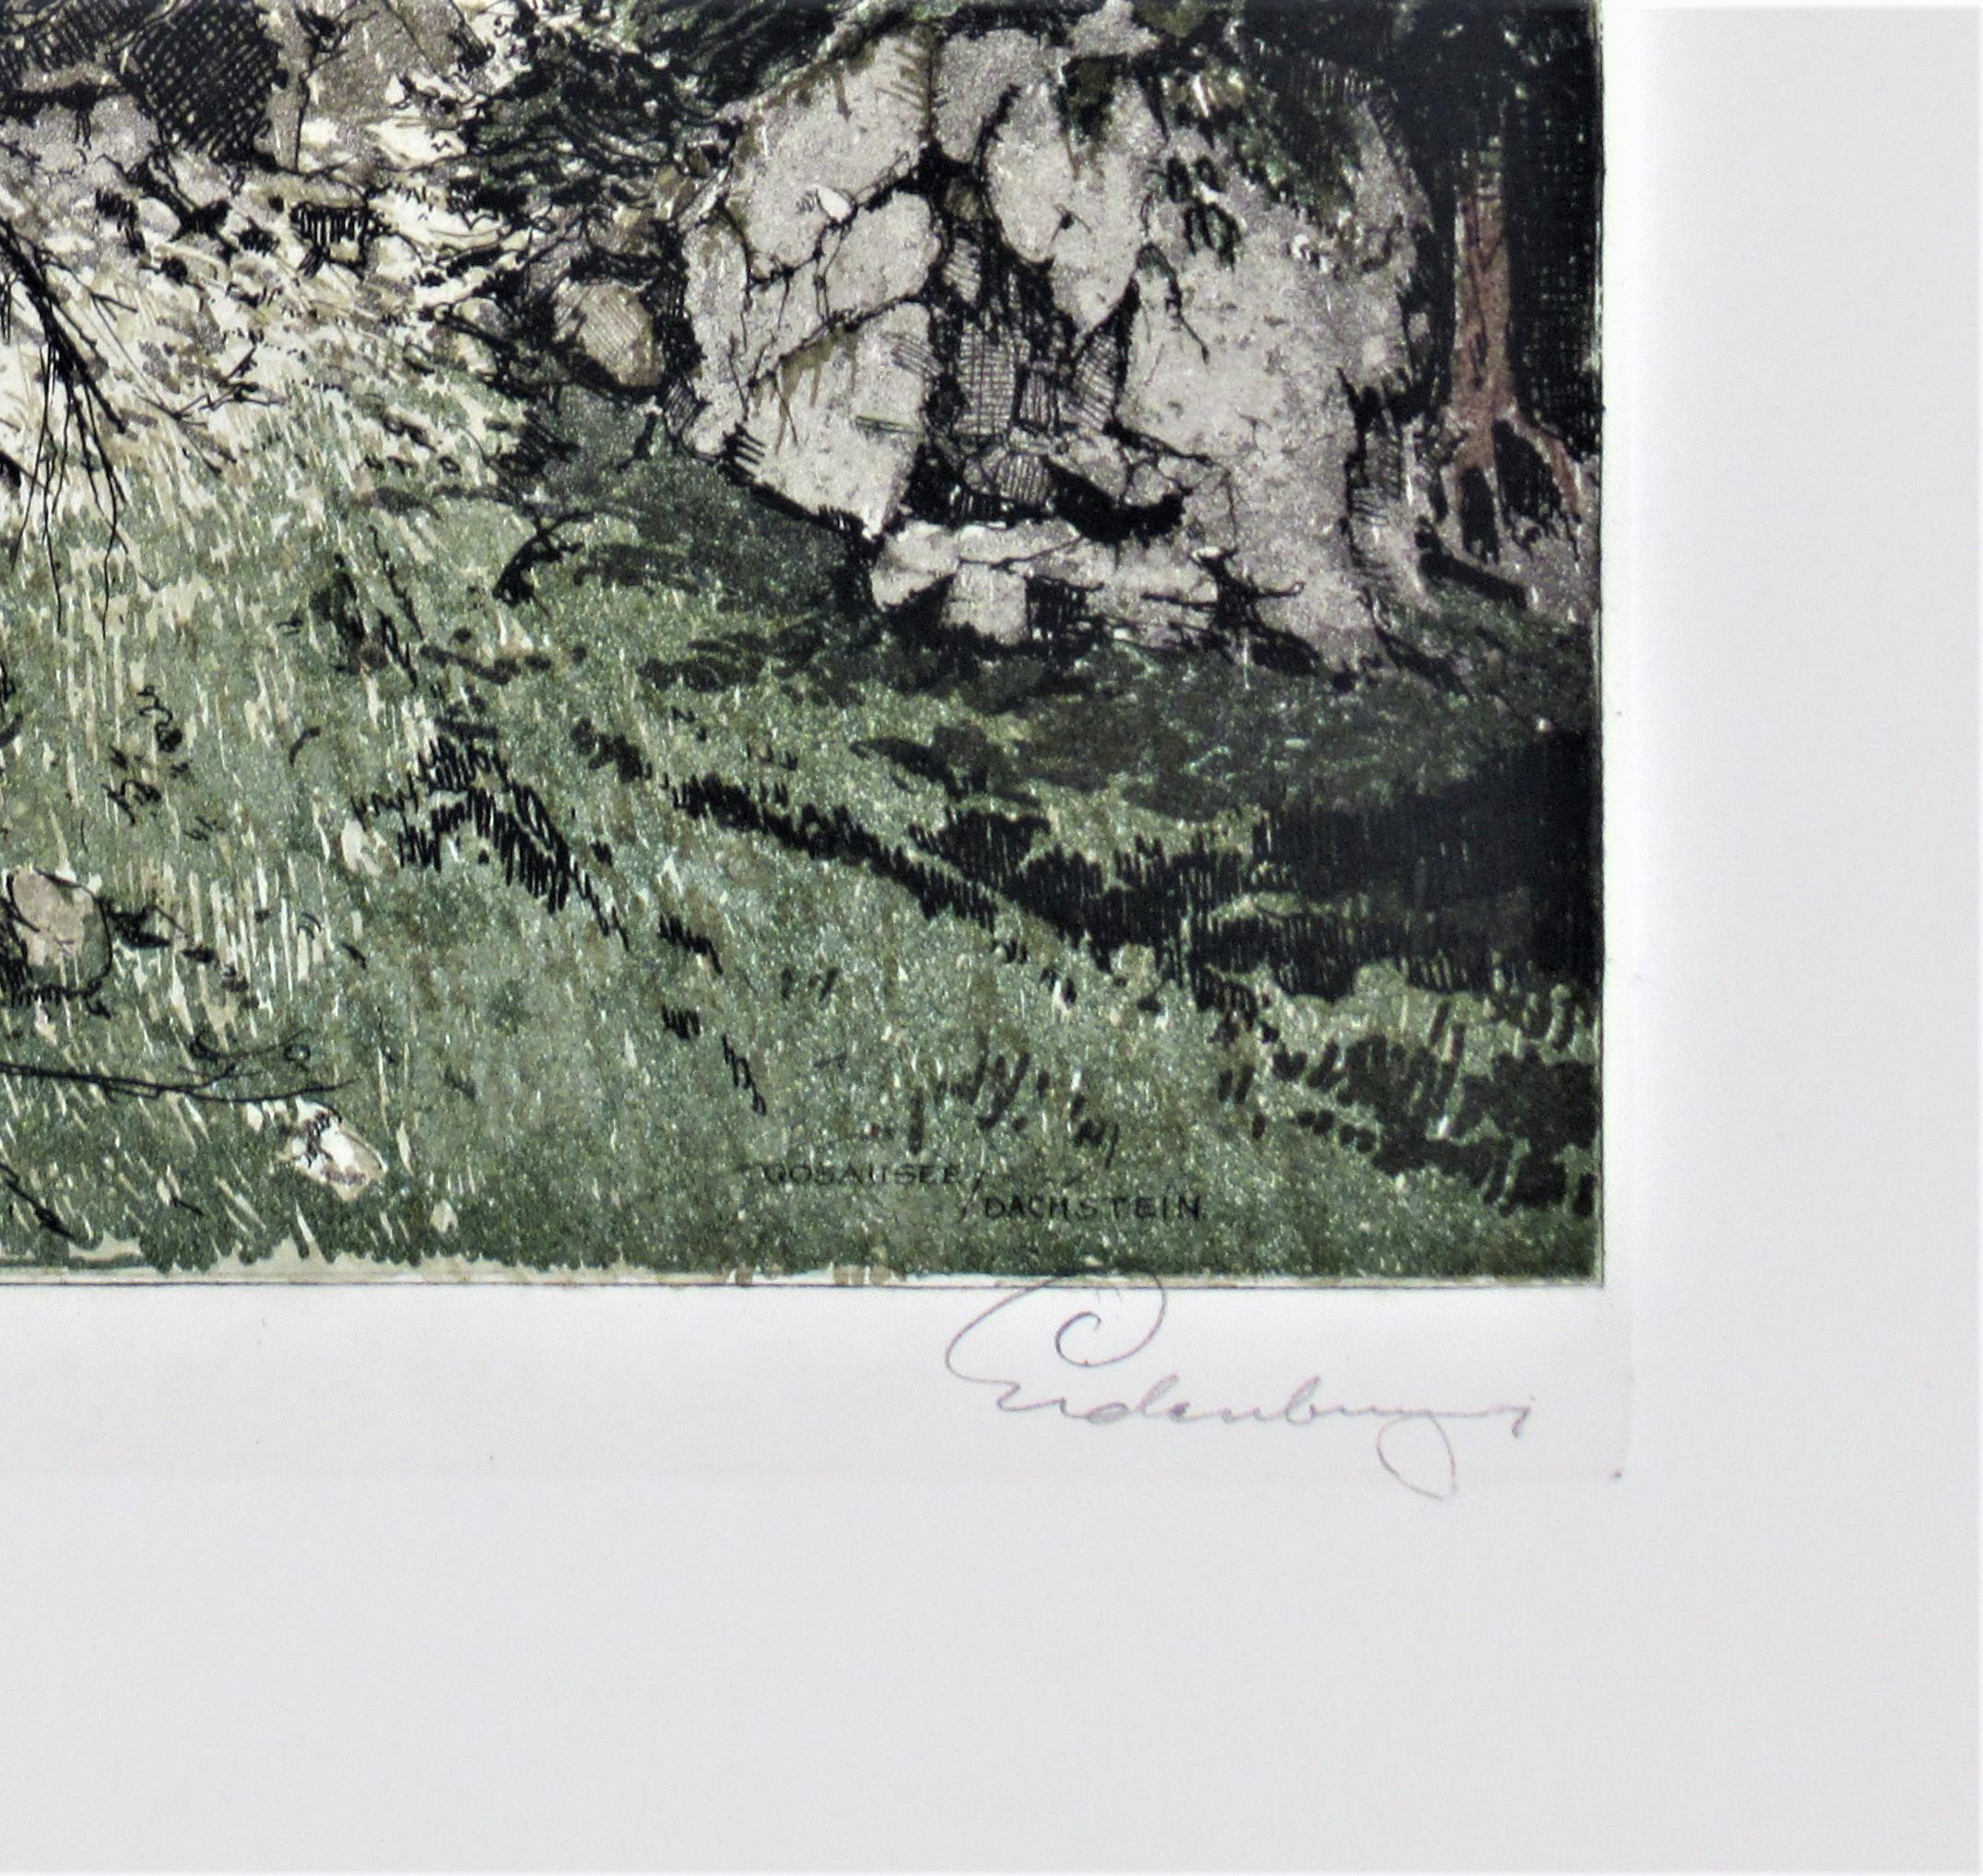 Dachstein View, Mountain Pine, Austria - Realist Print by Josef Eidenberger